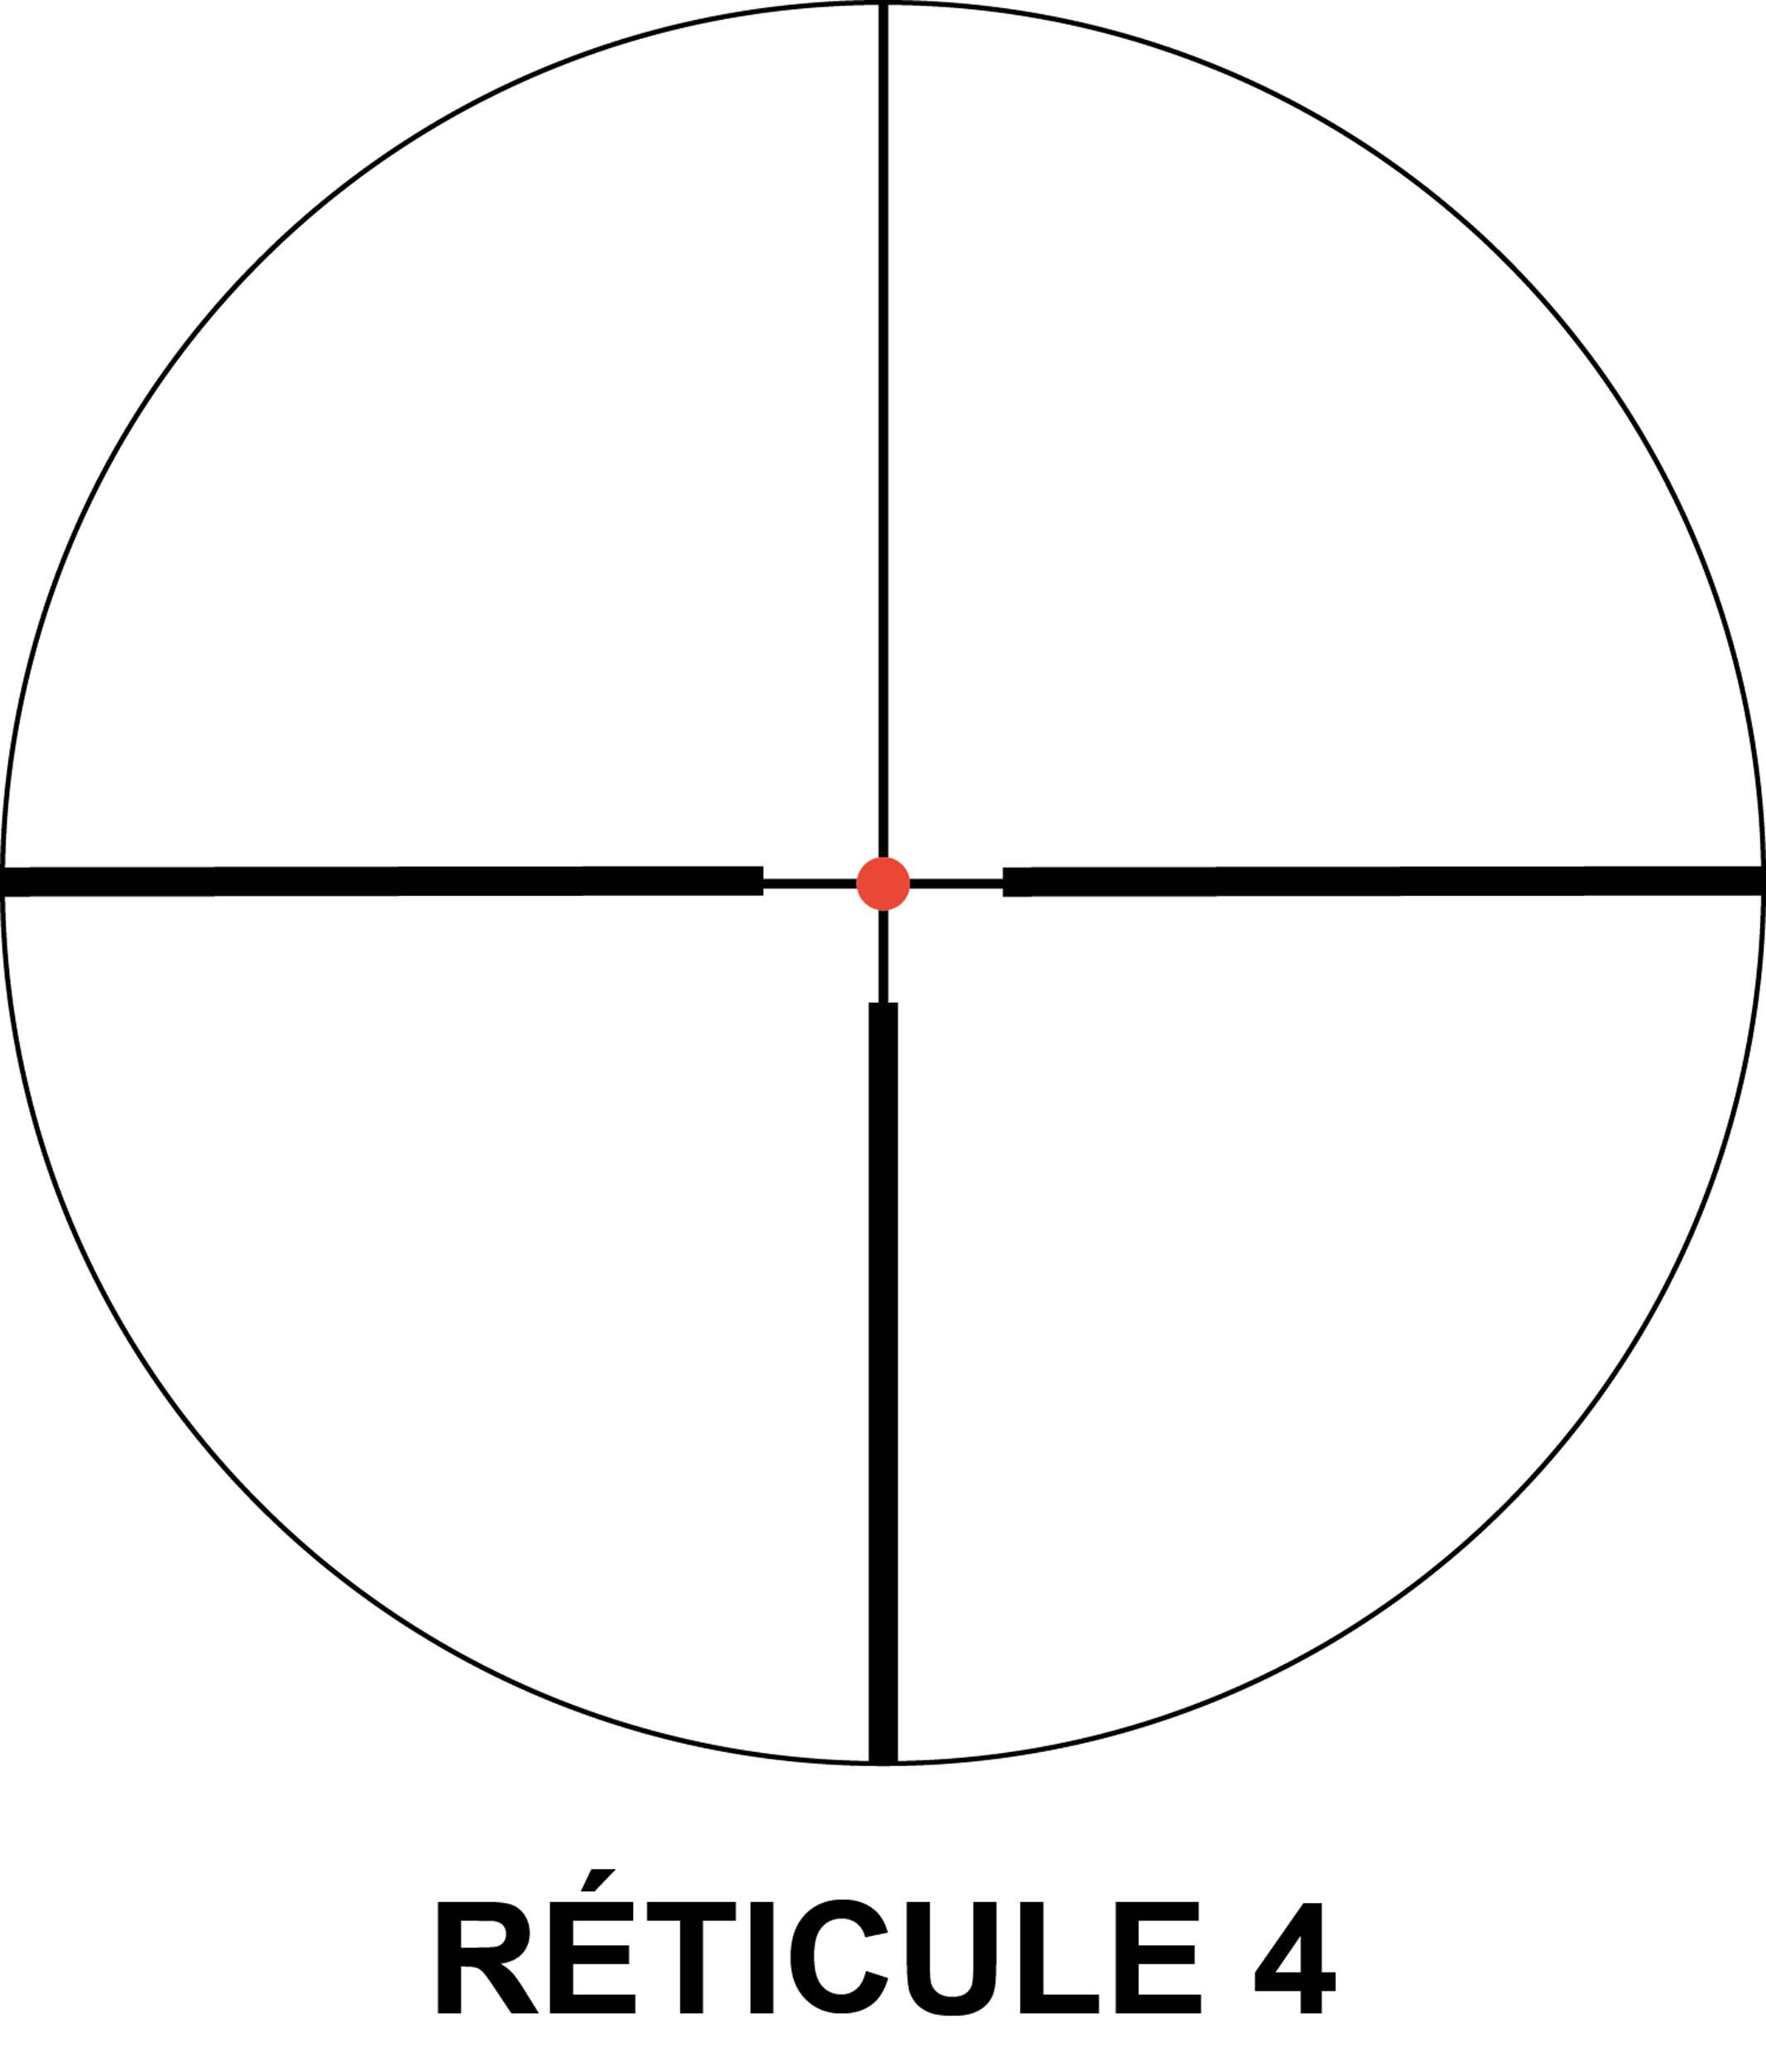 OC1824-R Microdot scope 3-12 x 56